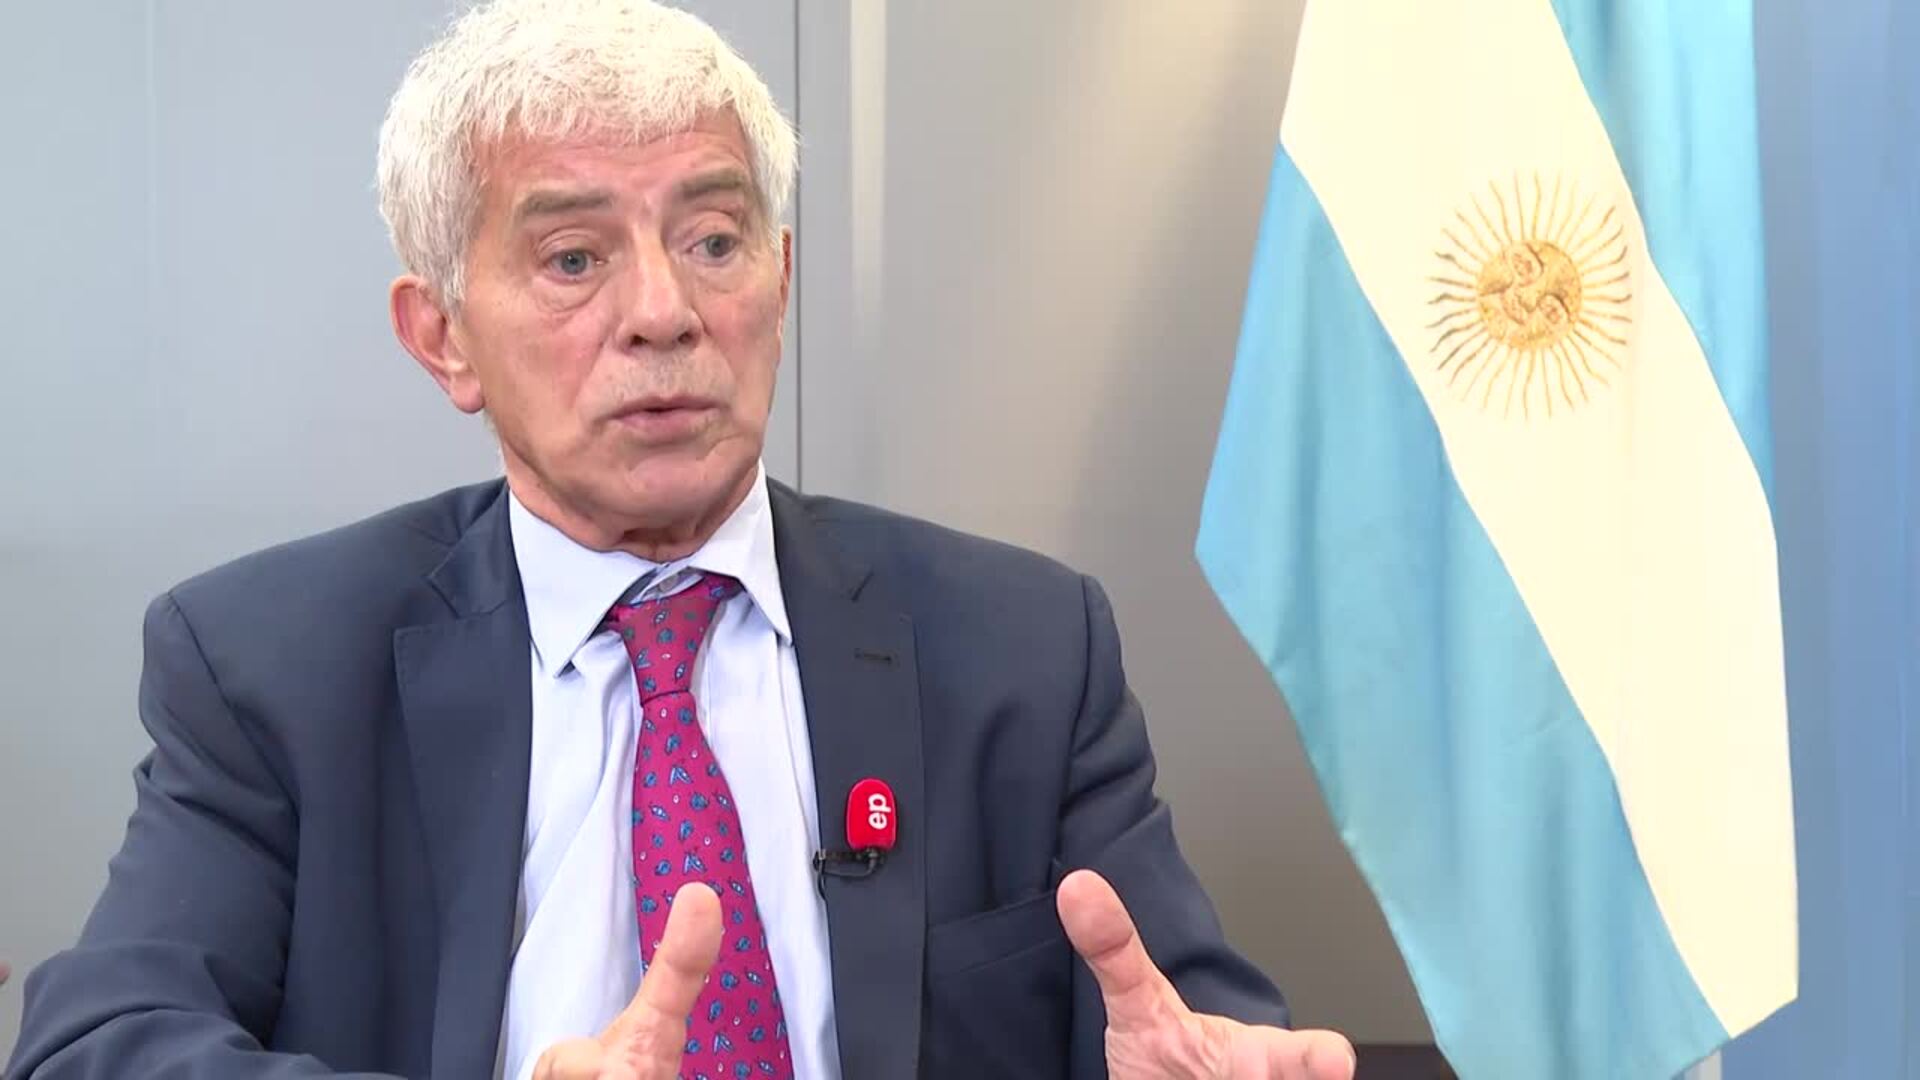 El ministro de Justicia argentino avisa de que cortar la calle es delito